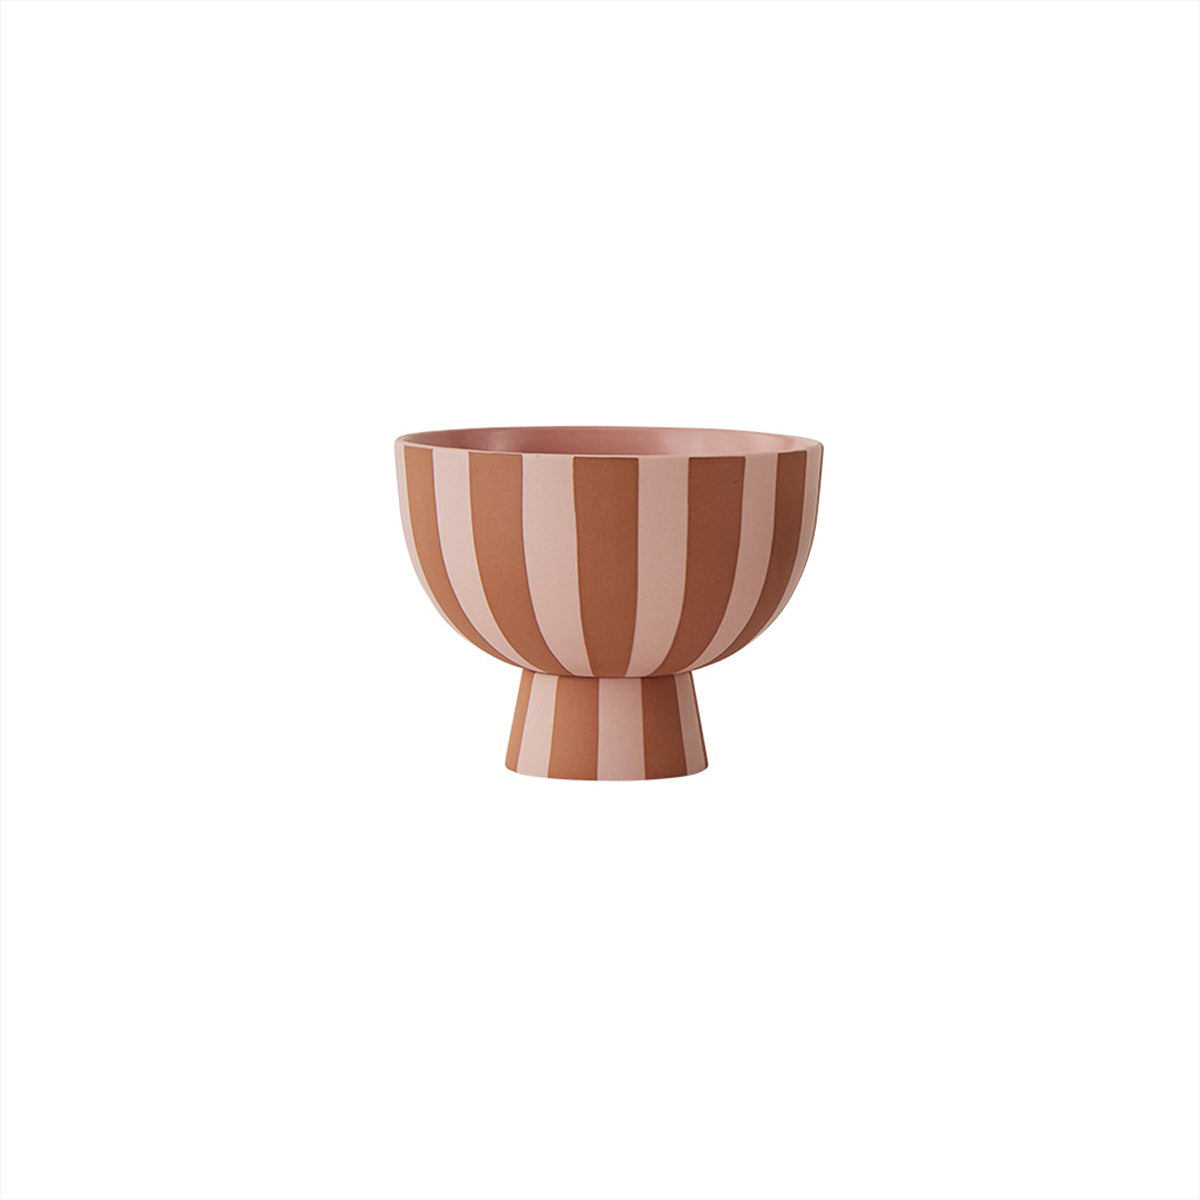 OYOY LIVING Toppu Mini Bowl Vase 307 Caramel / Rose